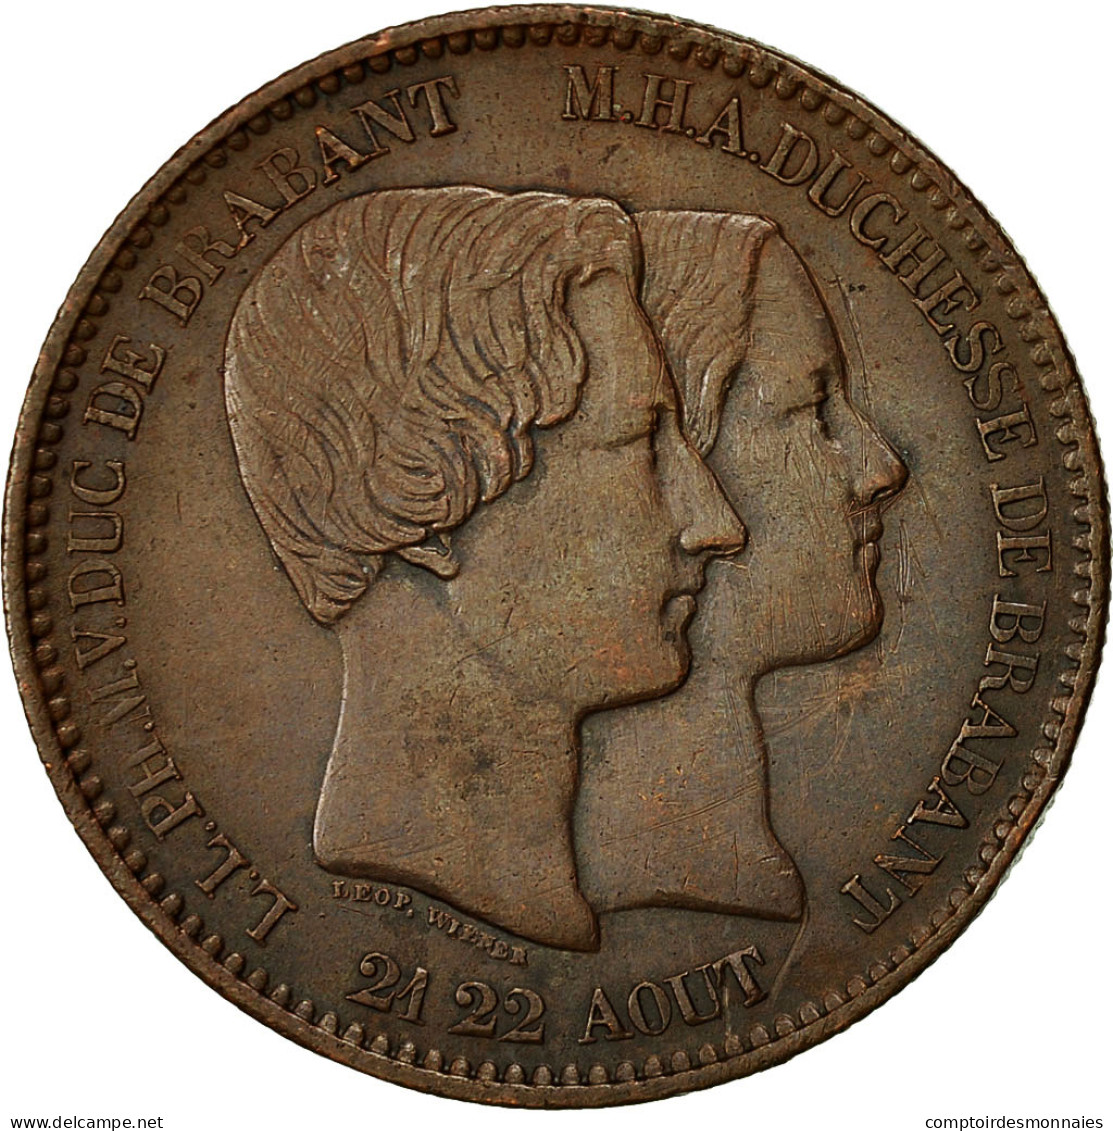 Monnaie, Belgique, 10 Centimes, 1853, TTB, Cuivre, KM:1.1 - 10 Cents